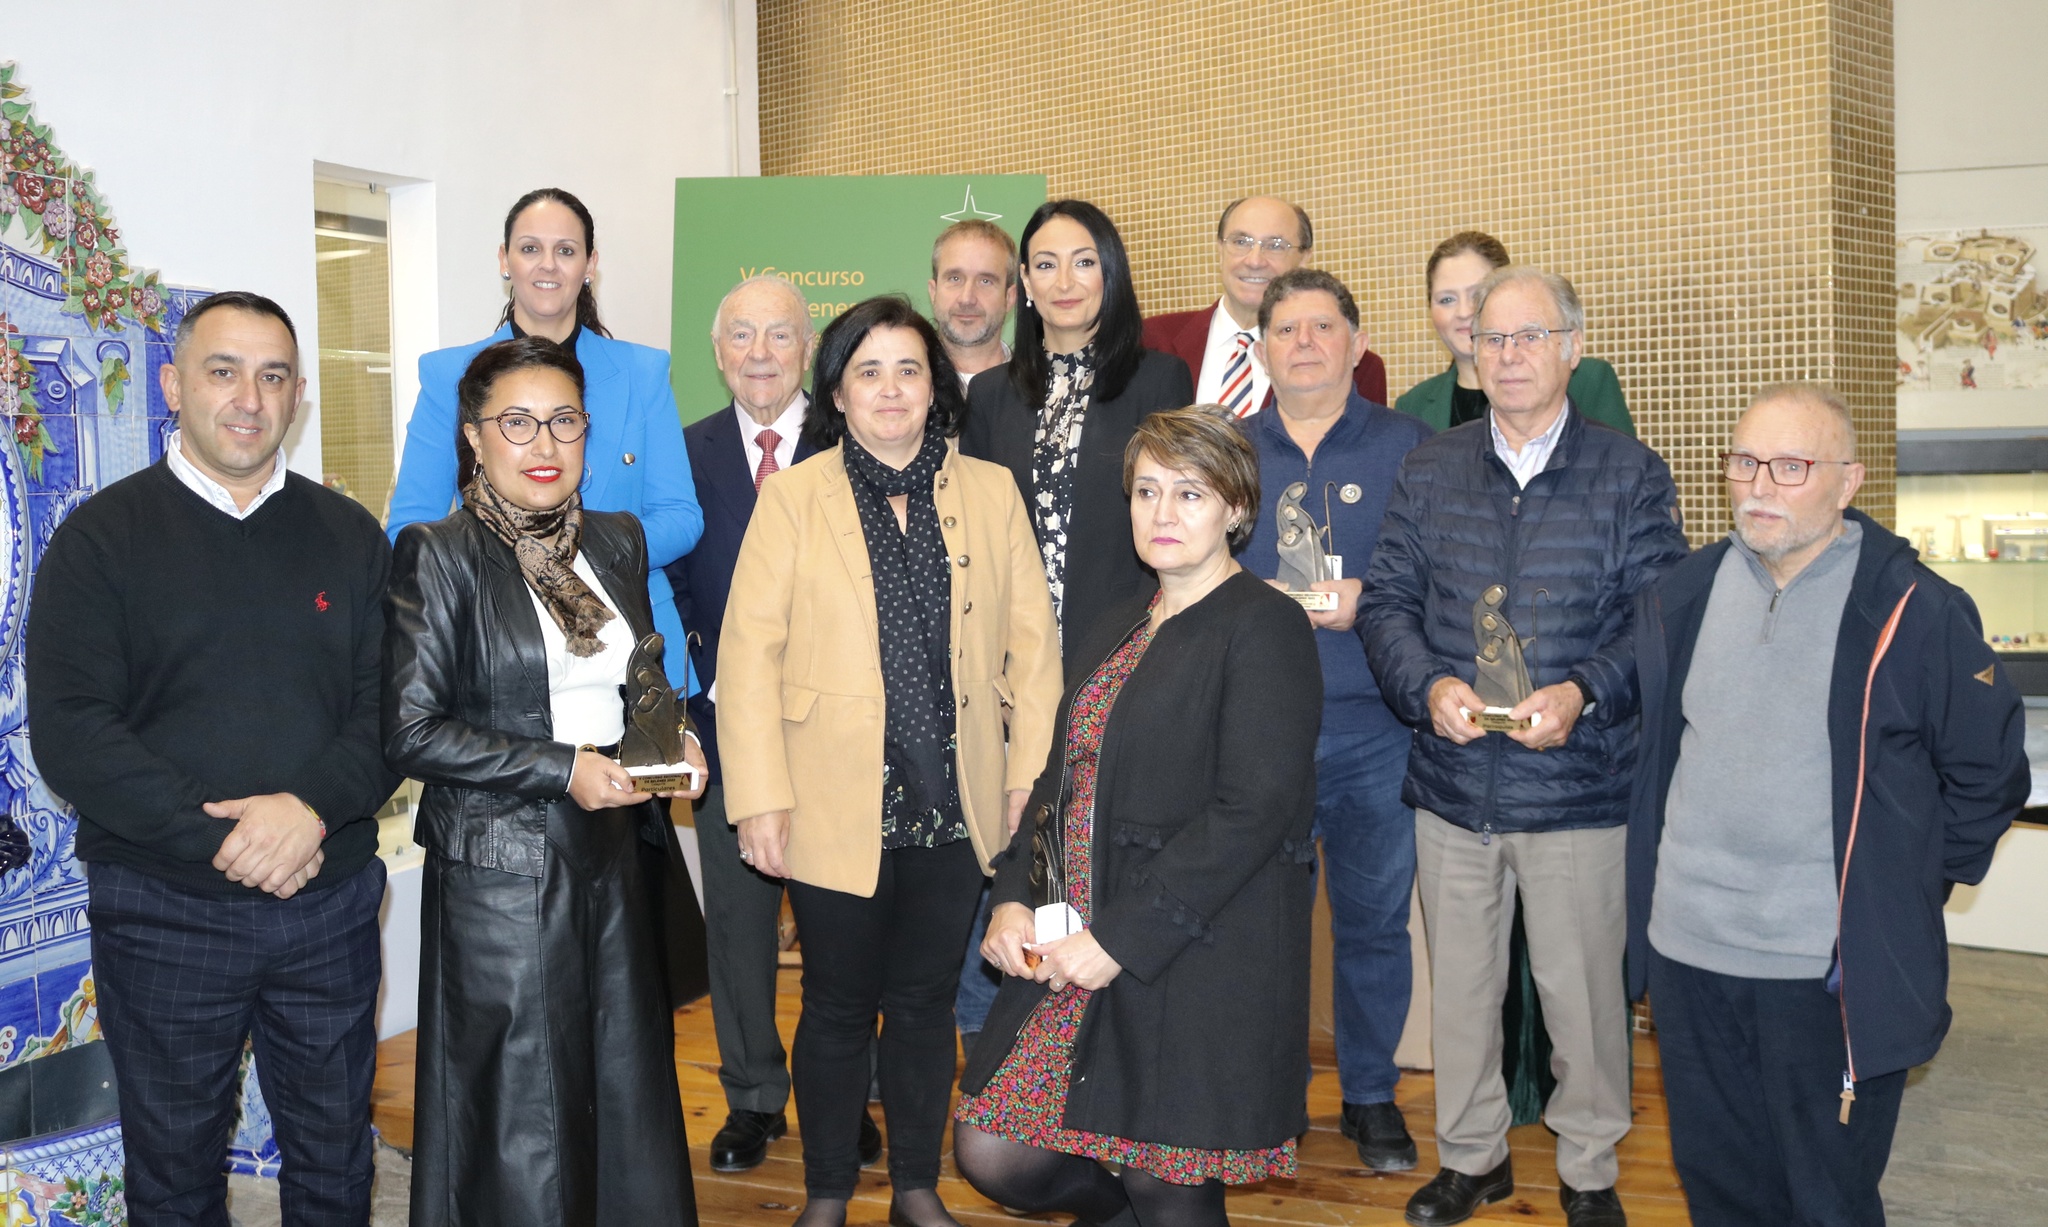 La consejera Valle Miguélez participó en la entrega de premios del V Concurso de Belenes de la Región de Murcia.